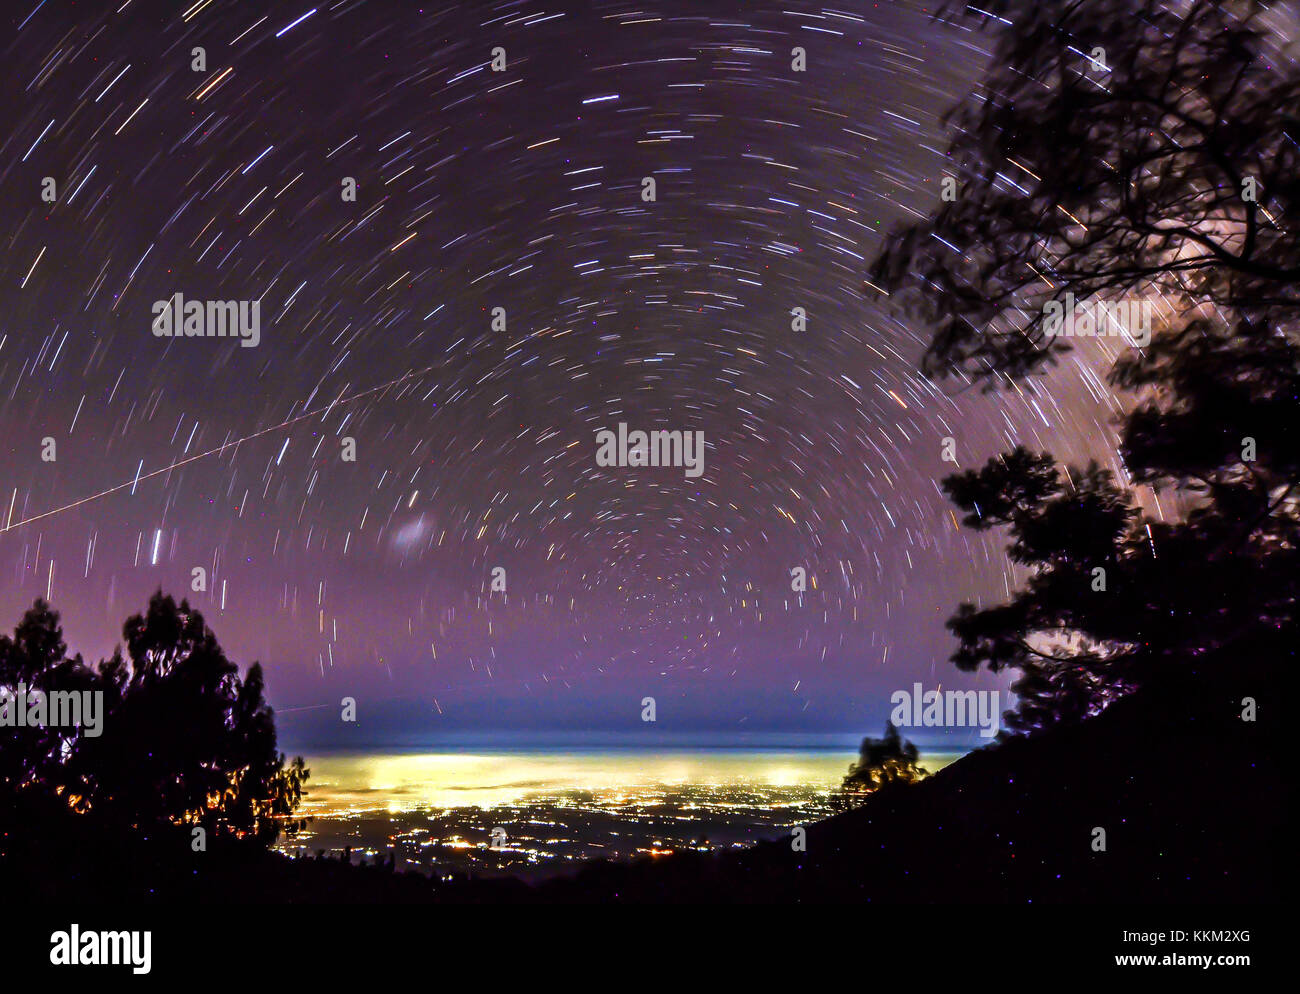 Star trail in kawah ijen avec la ville de banyuwangi en arrière-plan. Banque D'Images